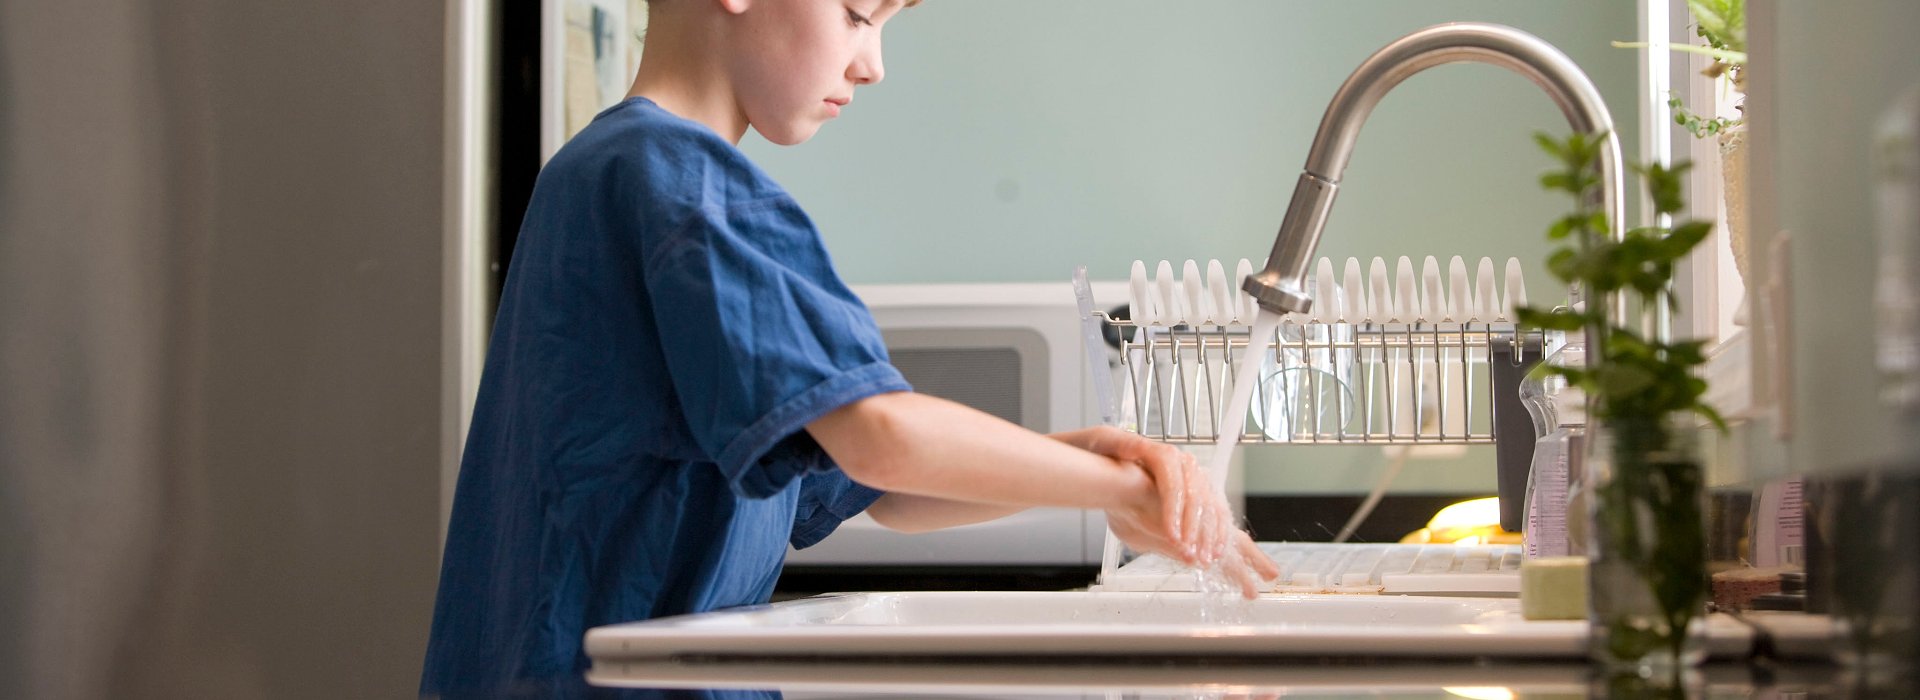 Ung gutt vasker hendene i kjøkkenvask